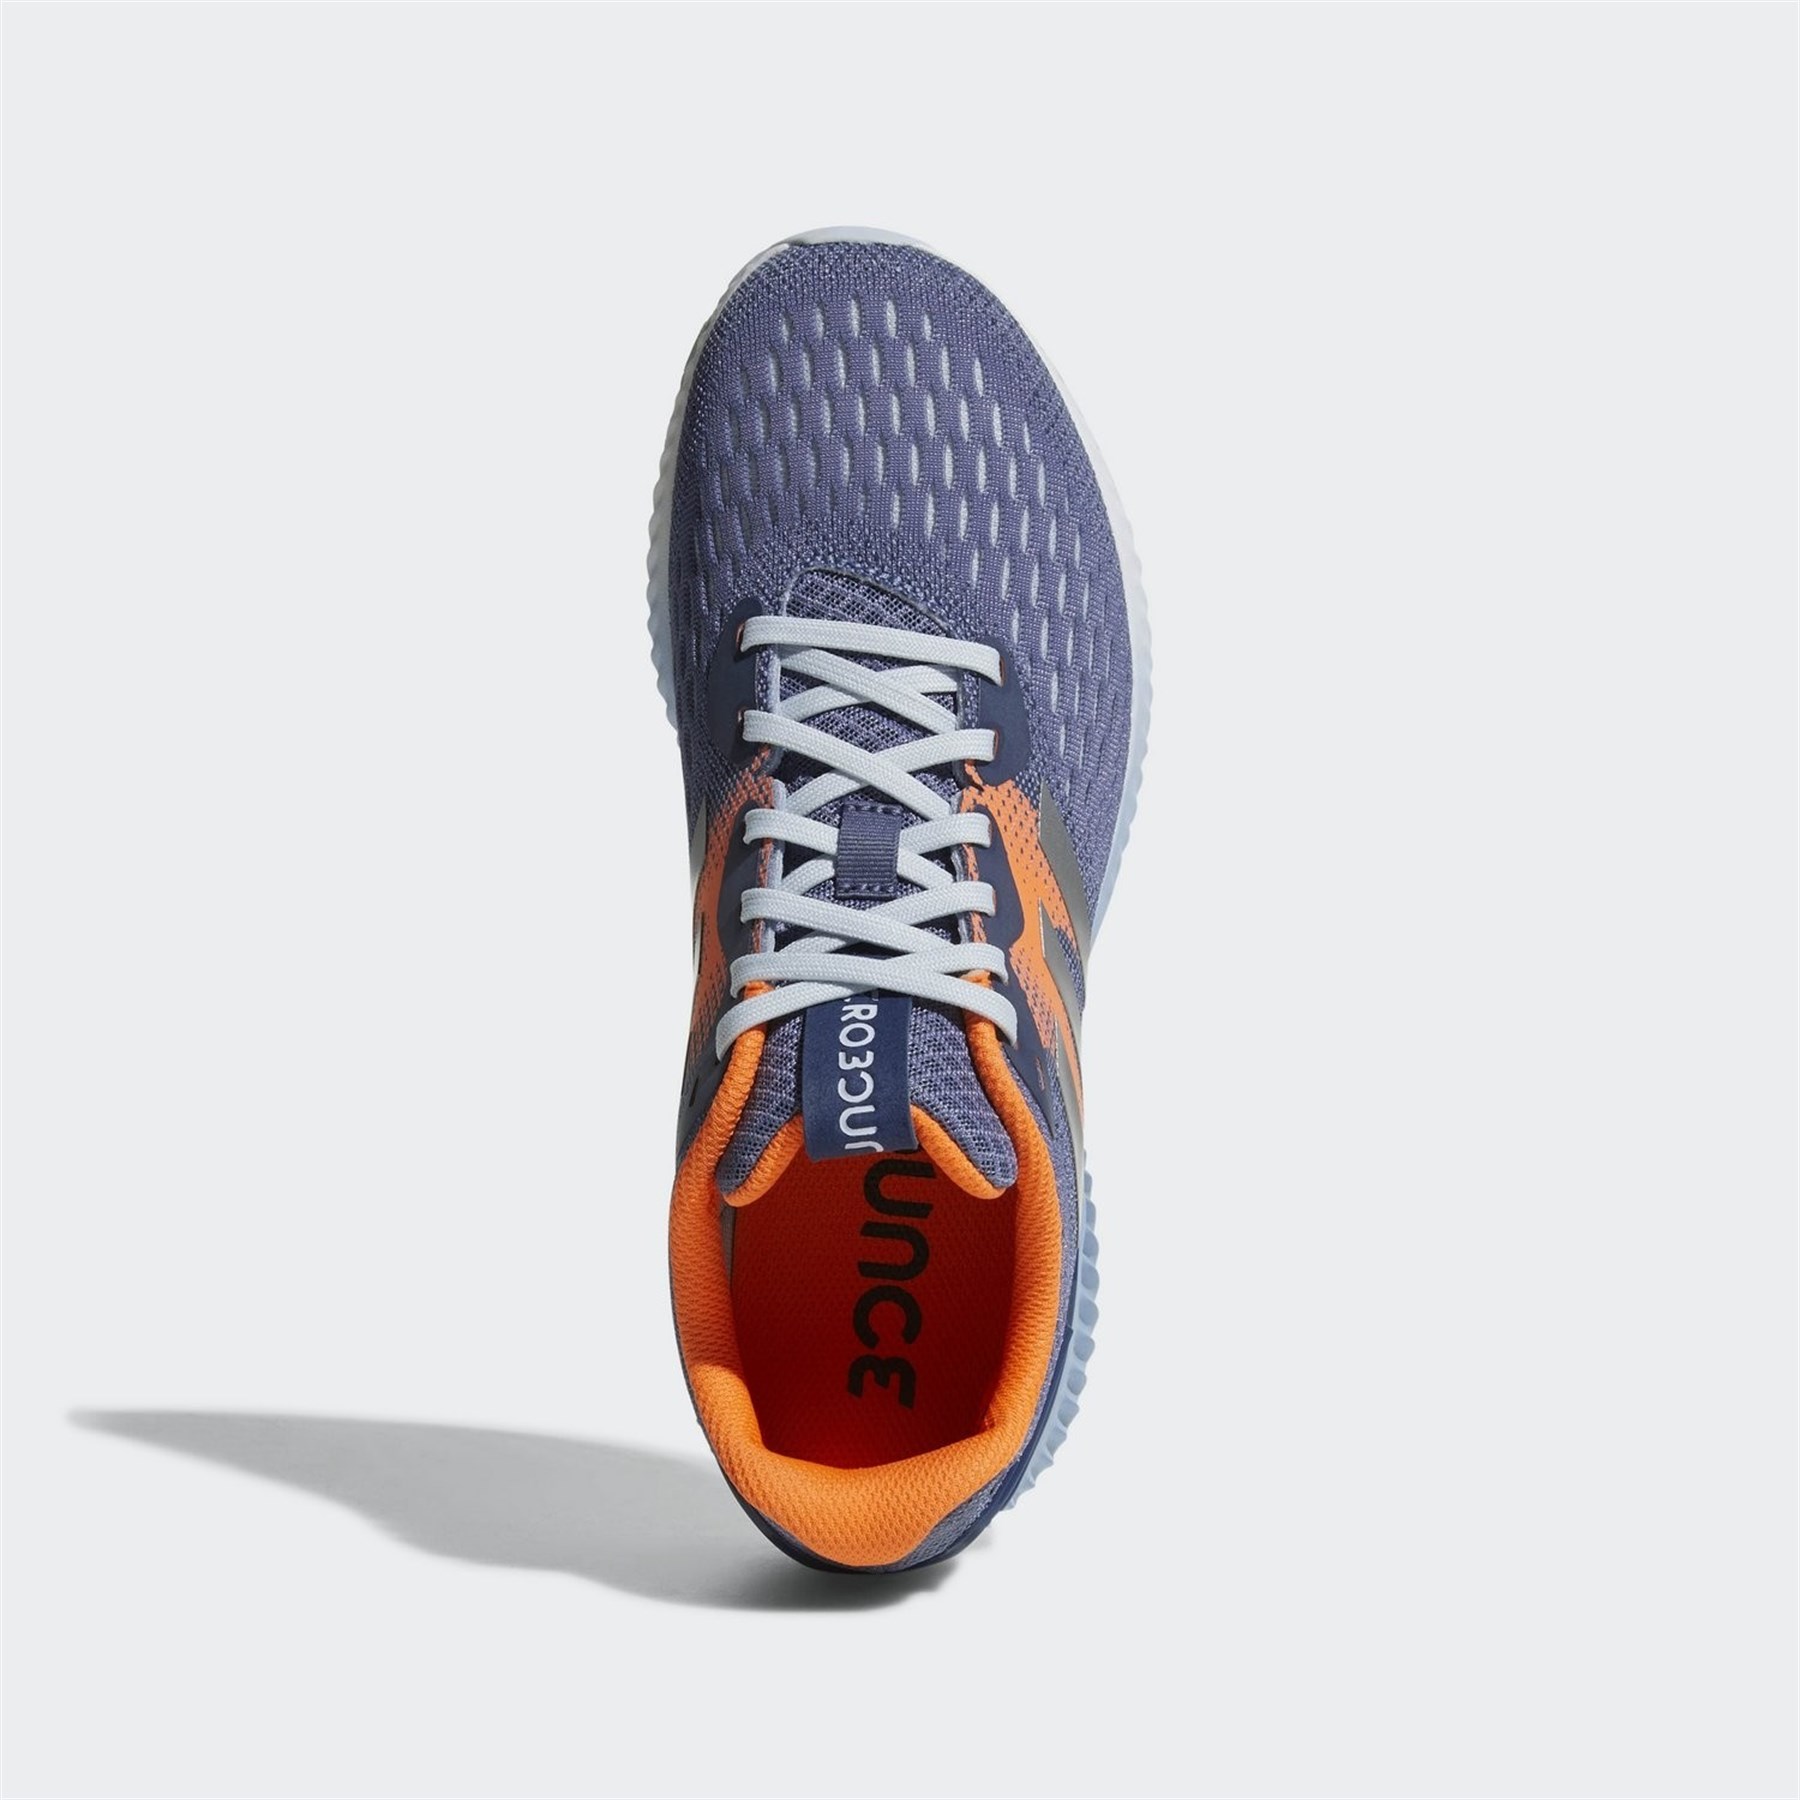 Adidas Kadın Koşu Yürüyüş Ayakkabısı DA9964 aerobounce w